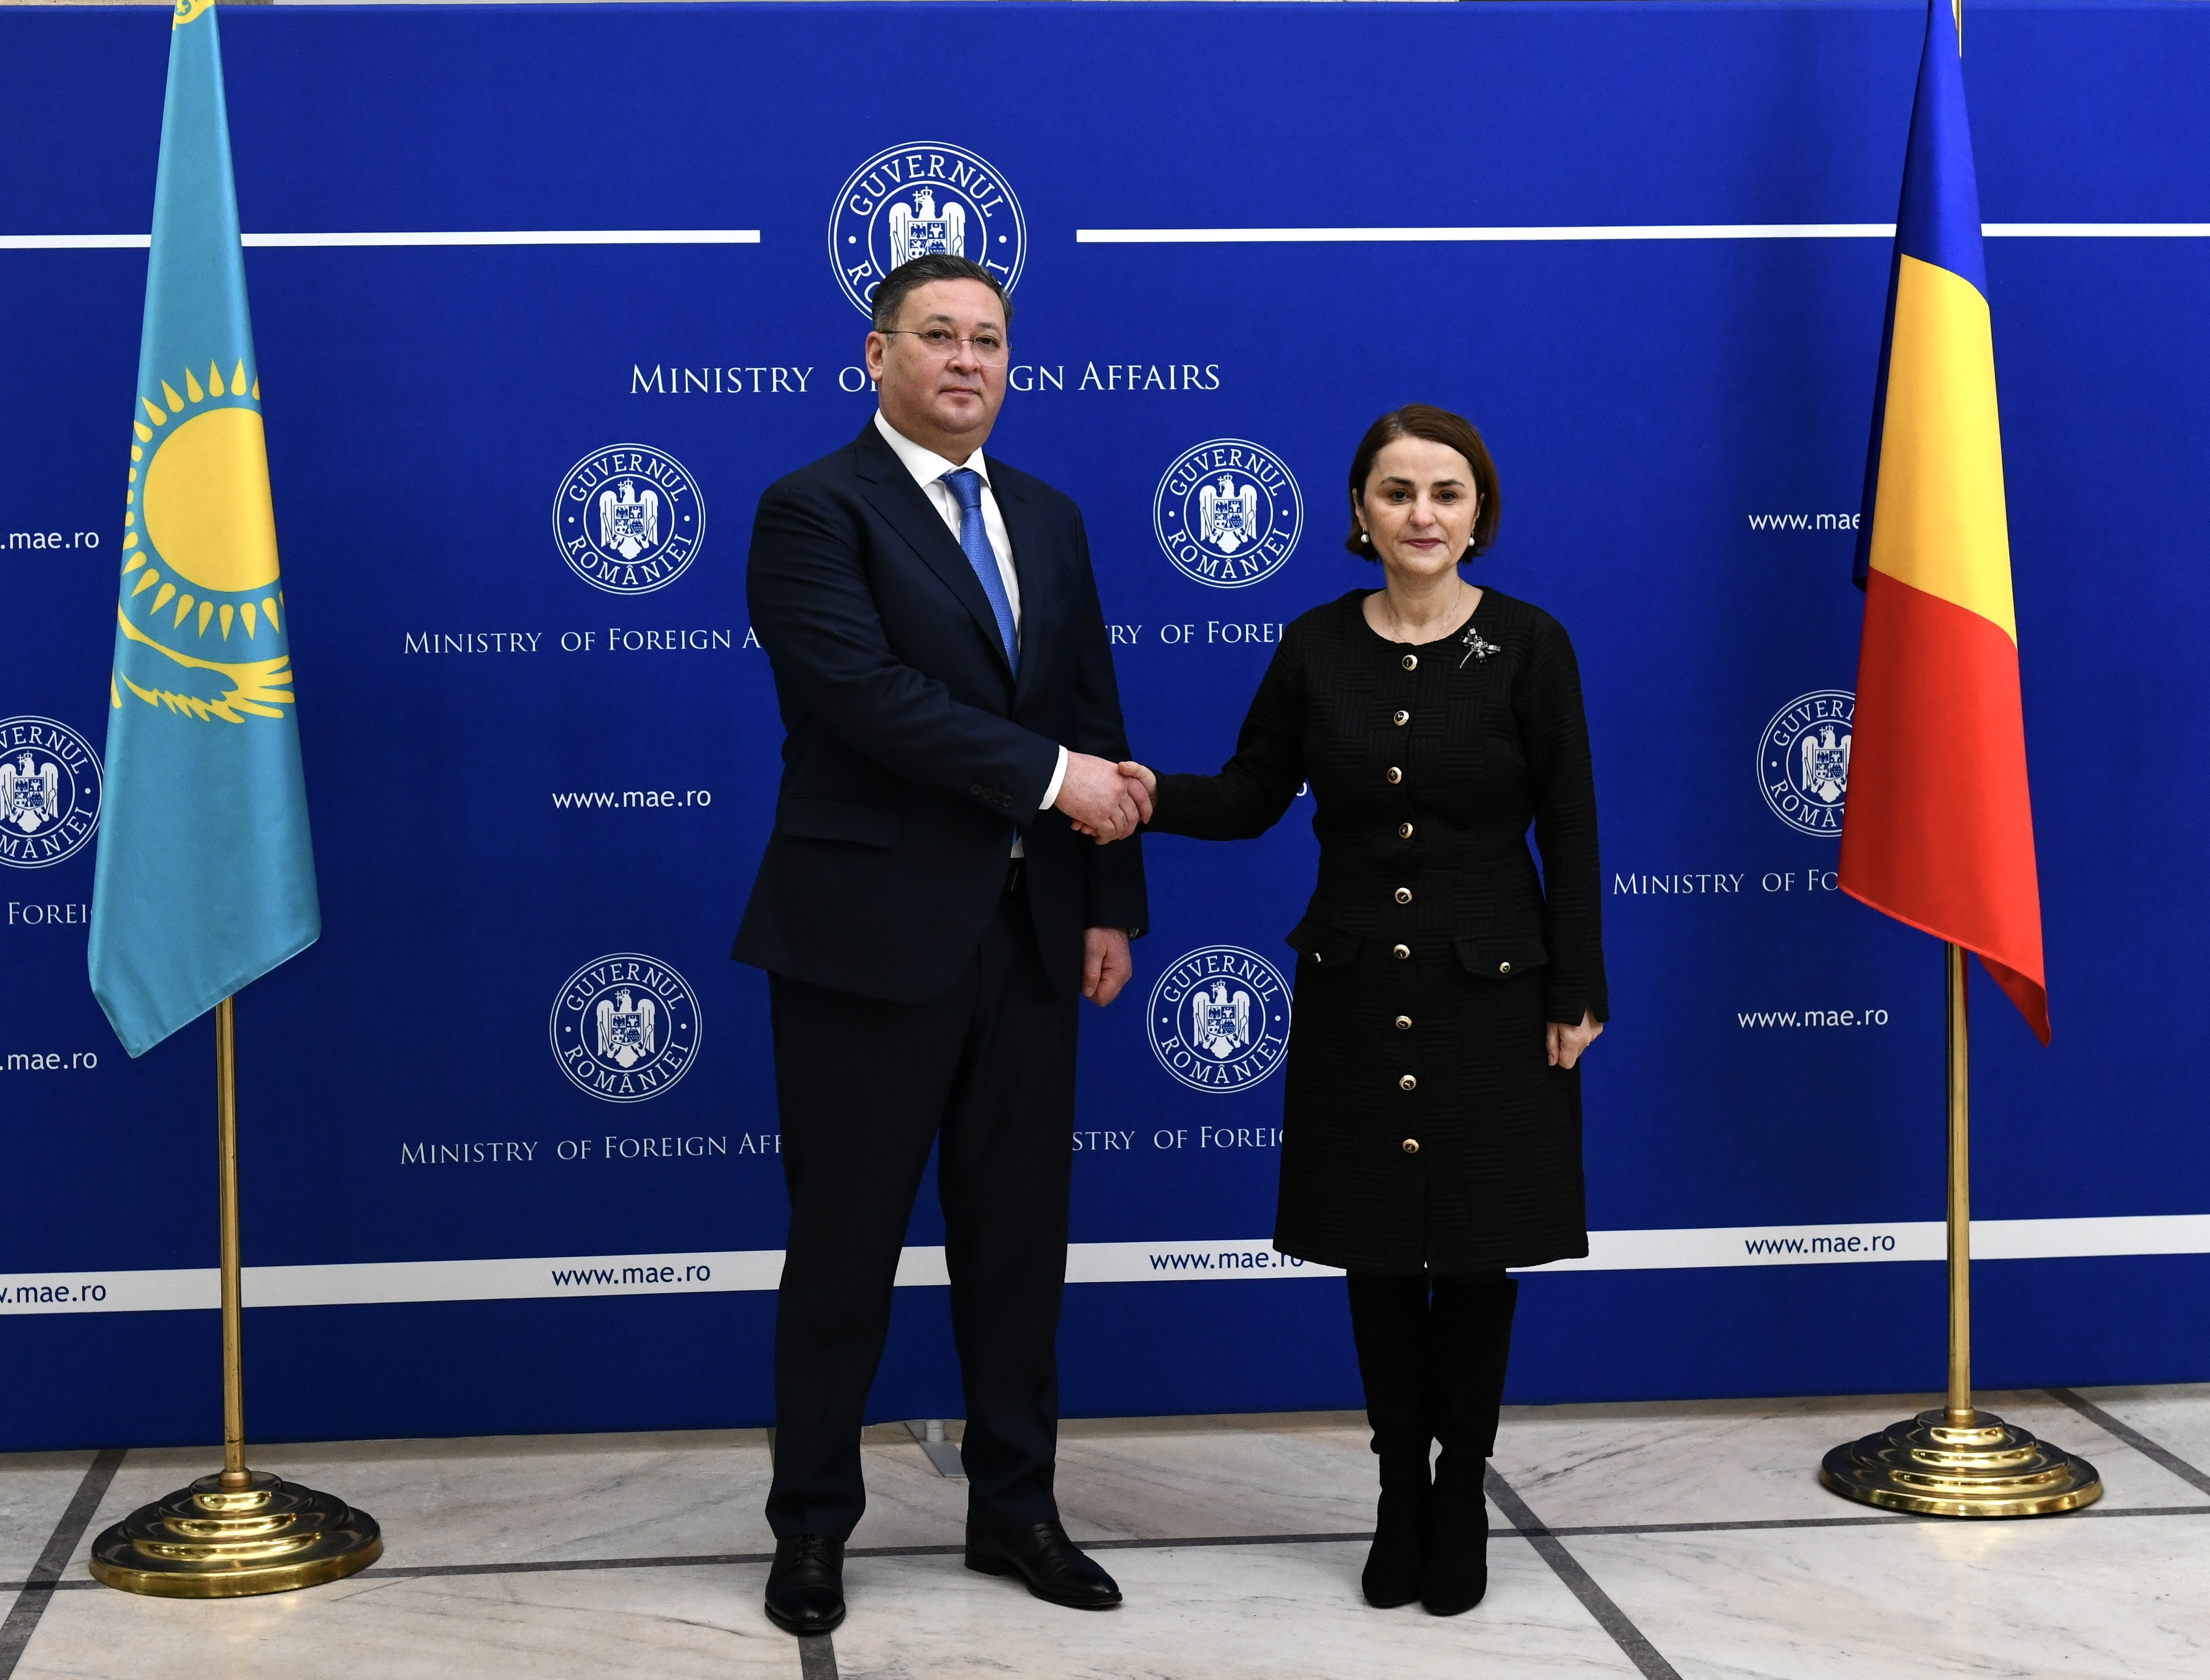 Первый официальный визит главы МИД Казахстана в Румынию открывает новую главу в двустороннем сотрудничестве